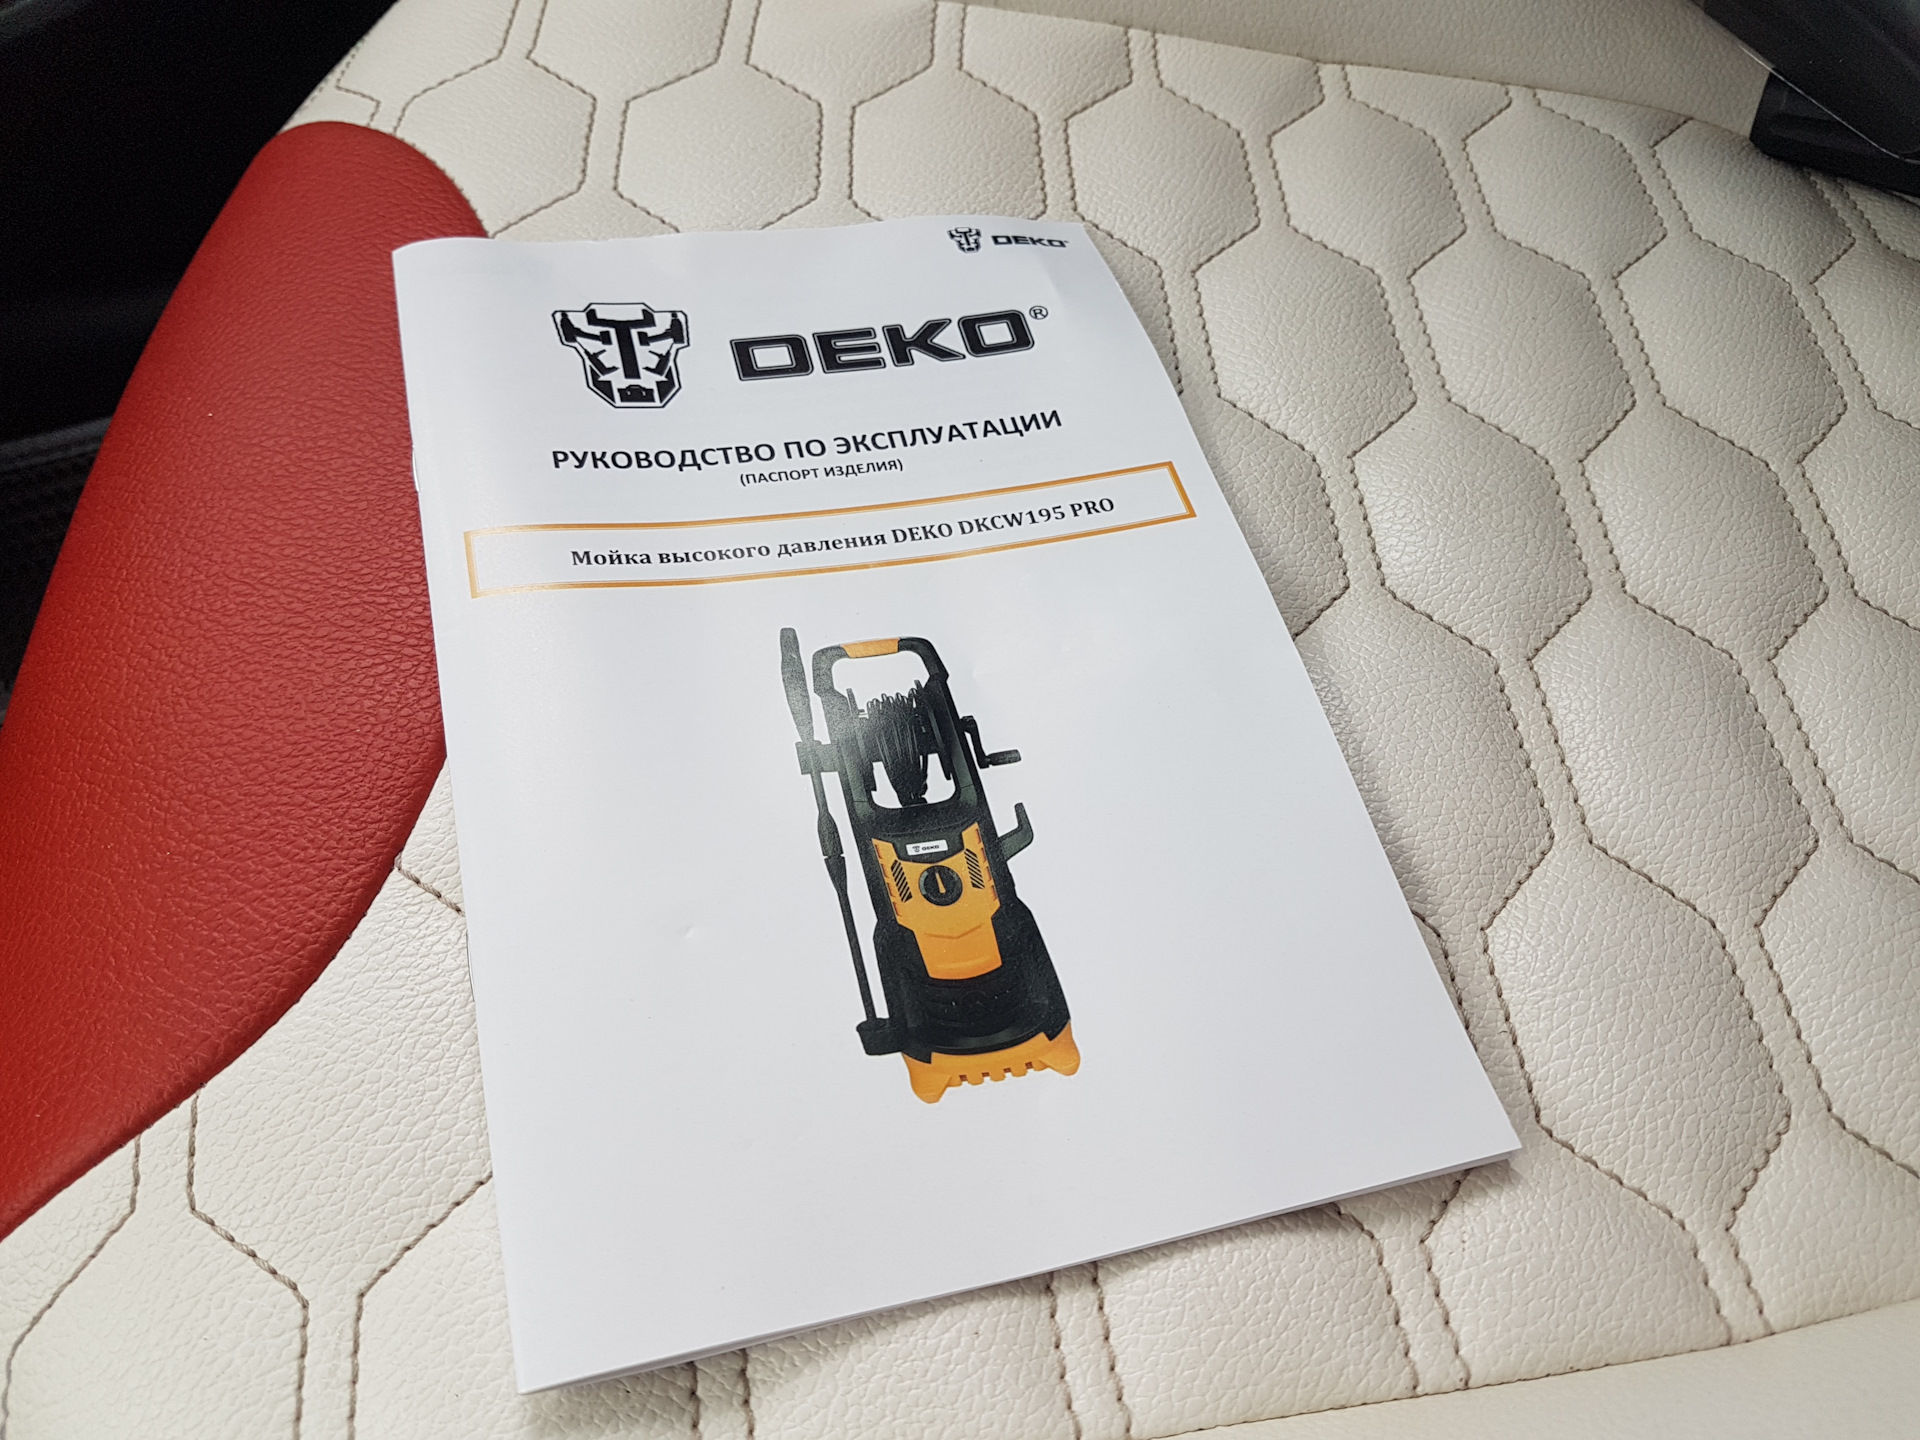 Мойка высокого давления deko dkcw215. Мойка высокого давления Deko dkcw195 Pro. Минимойка Deko dkcw25. Мойка высокого давления Deko dkcw140. Мойка высокого давления Deko dkcw150 Pro.